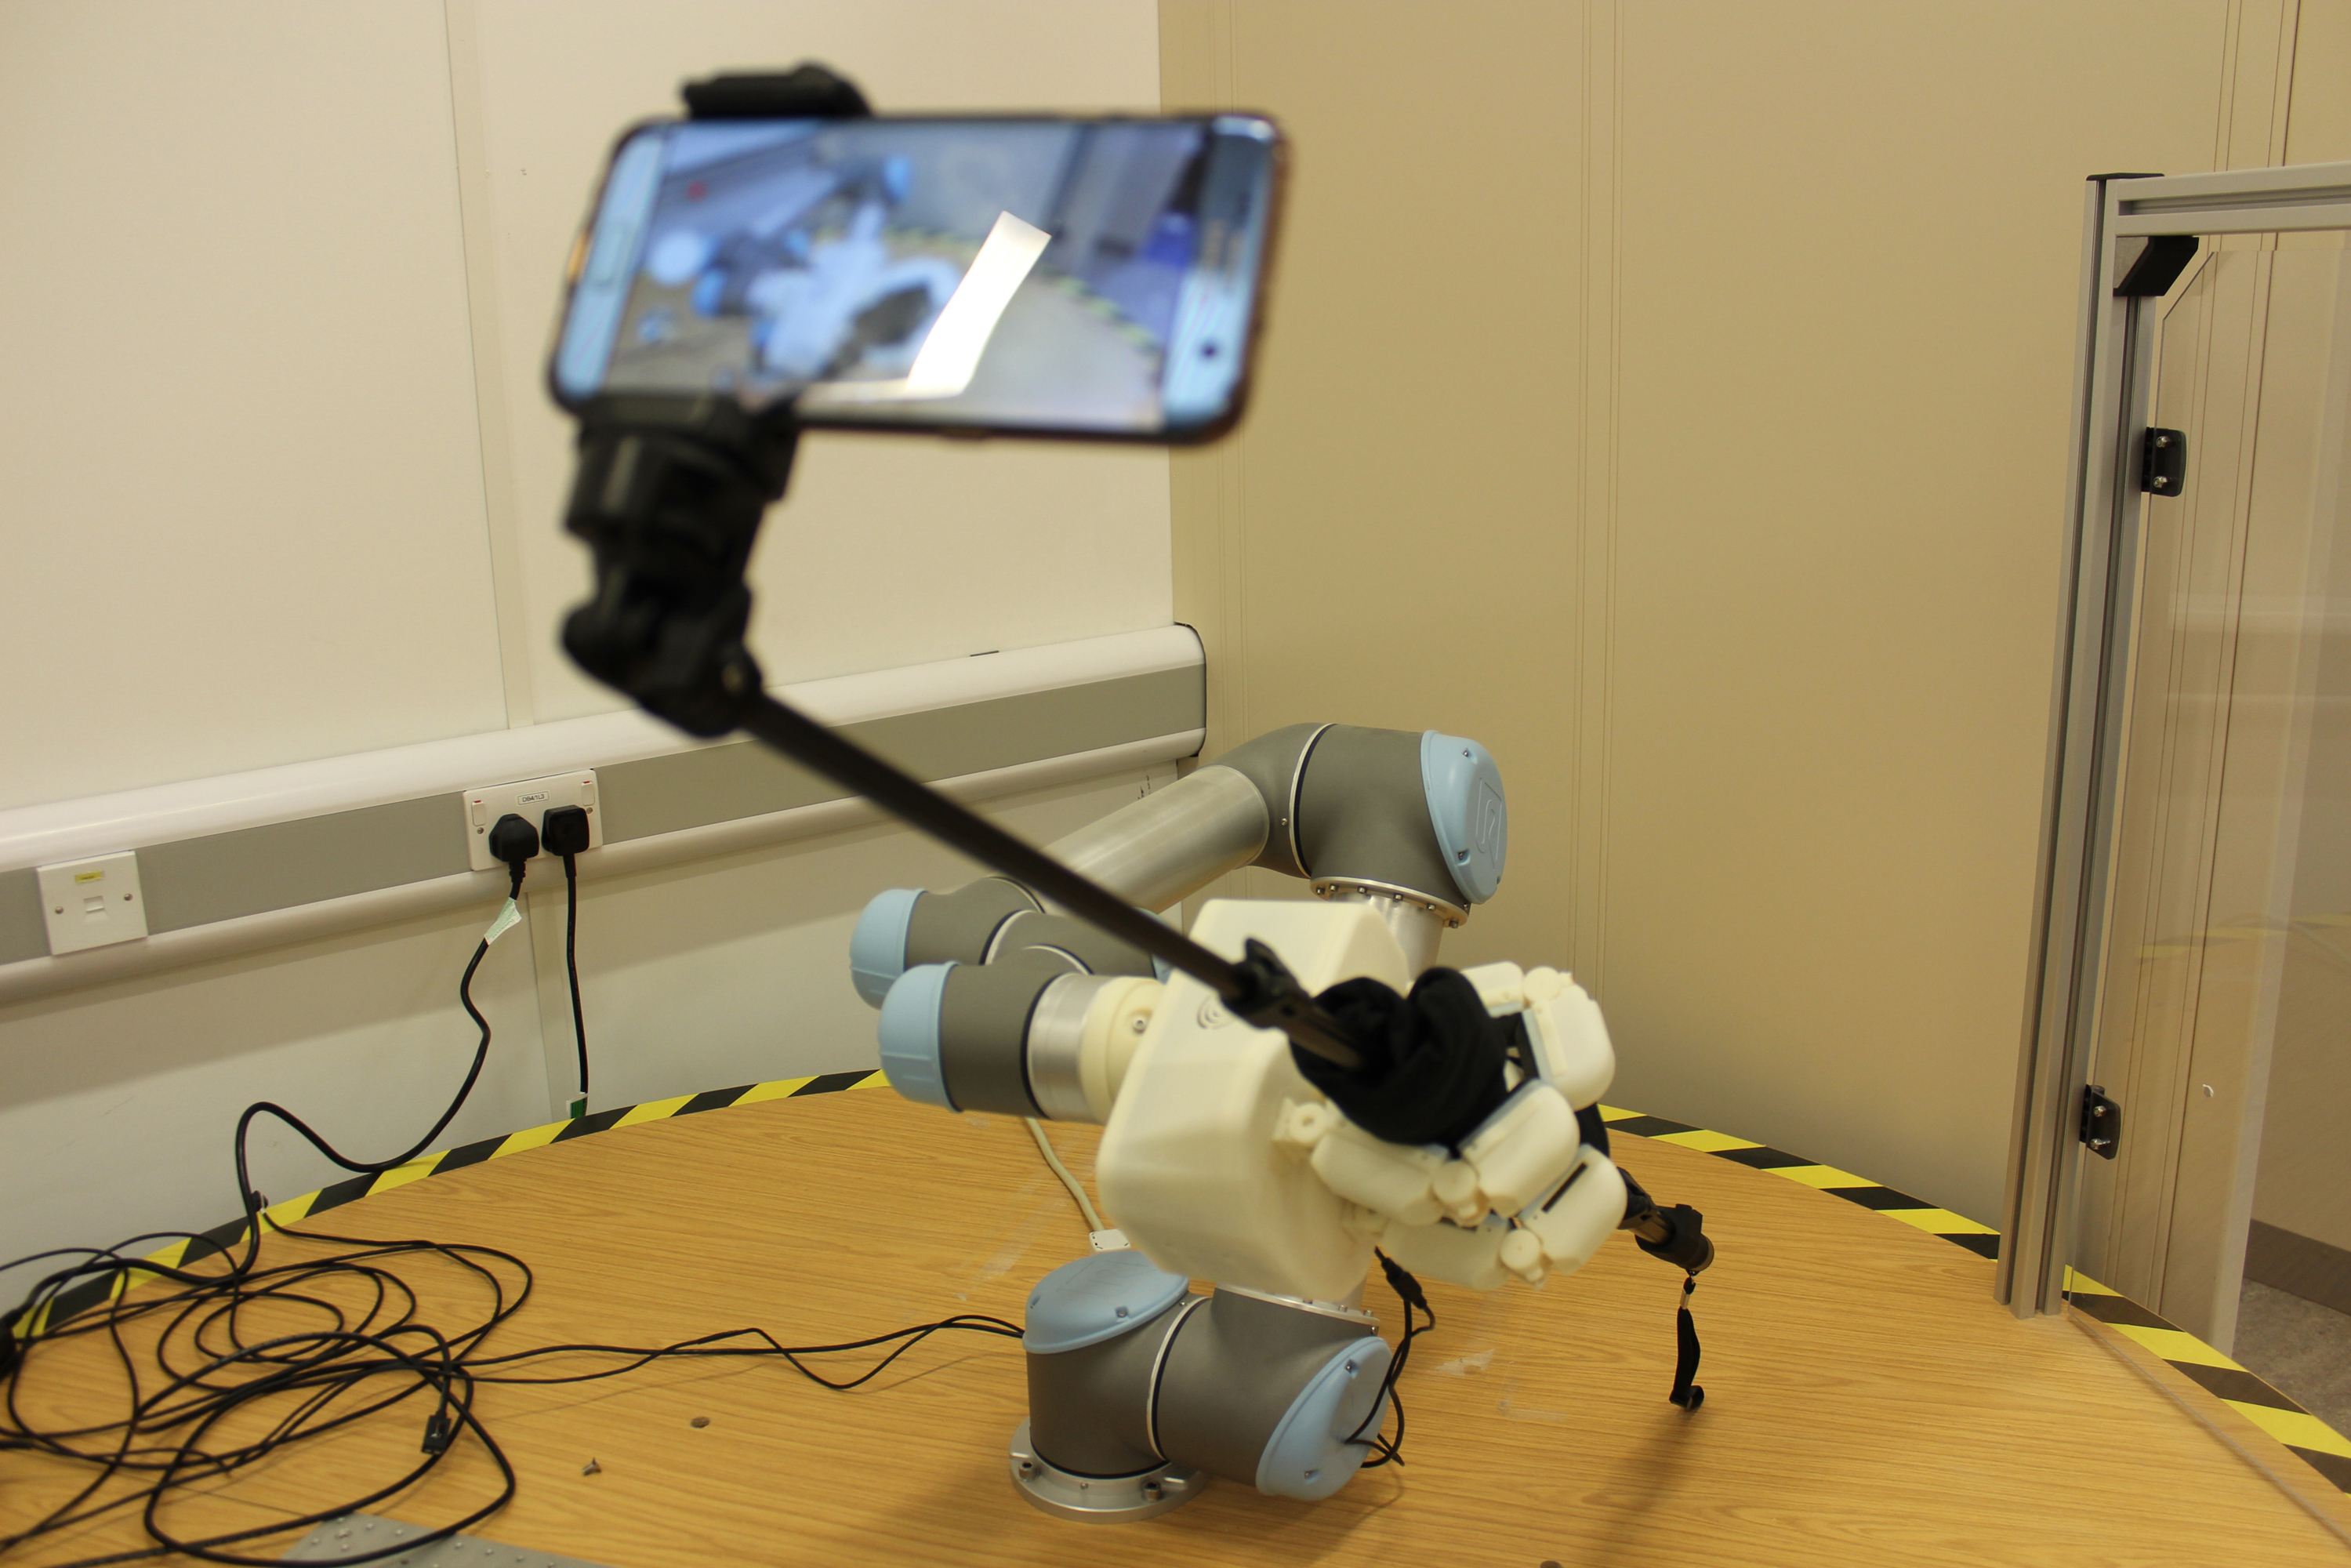 A robot taking a selfie.